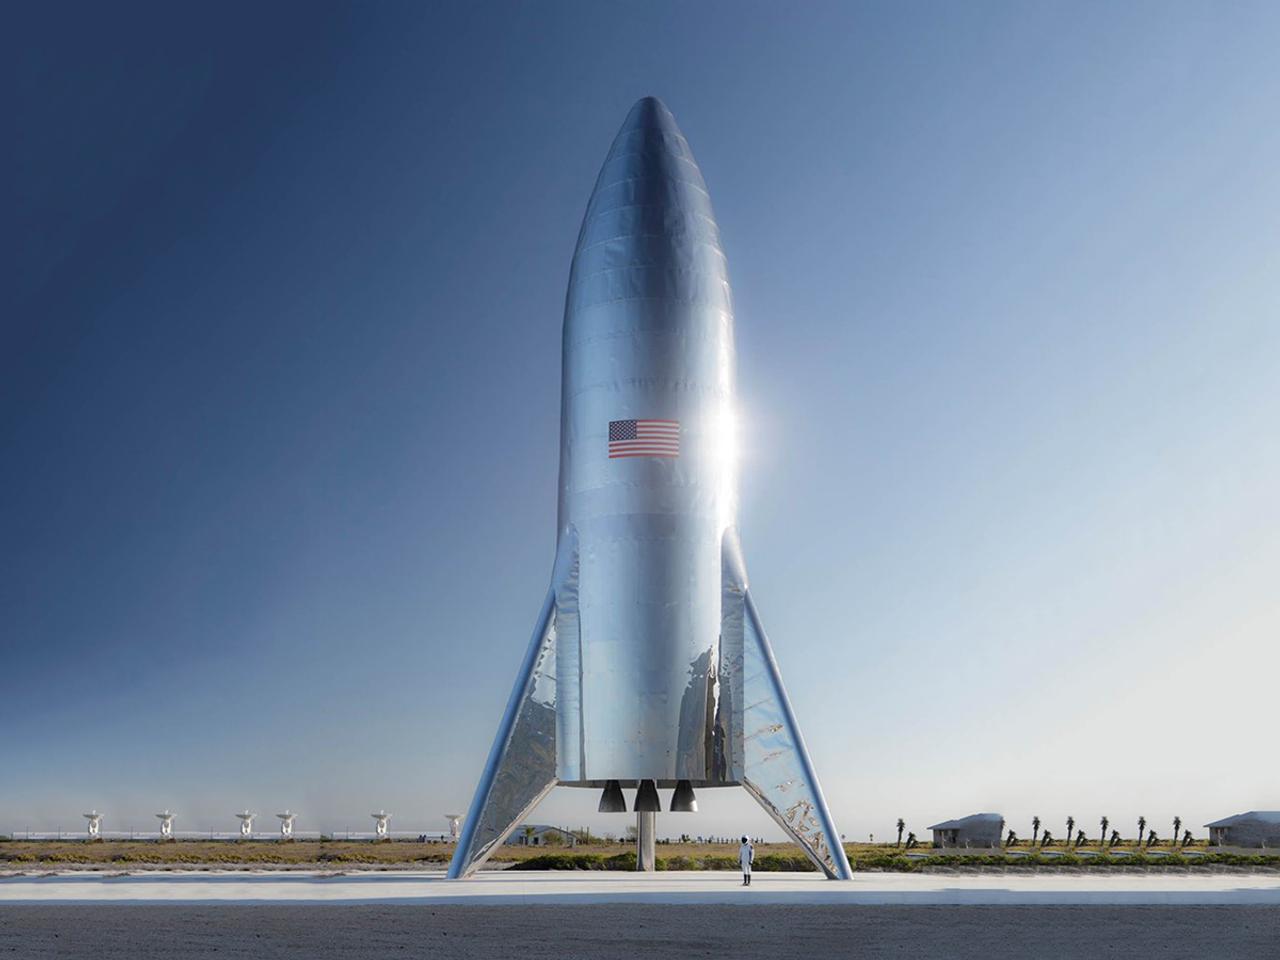 SpaceXの試験用Starshipが完成。ギンギラギンだけど夏休みの工作っぽいかも…